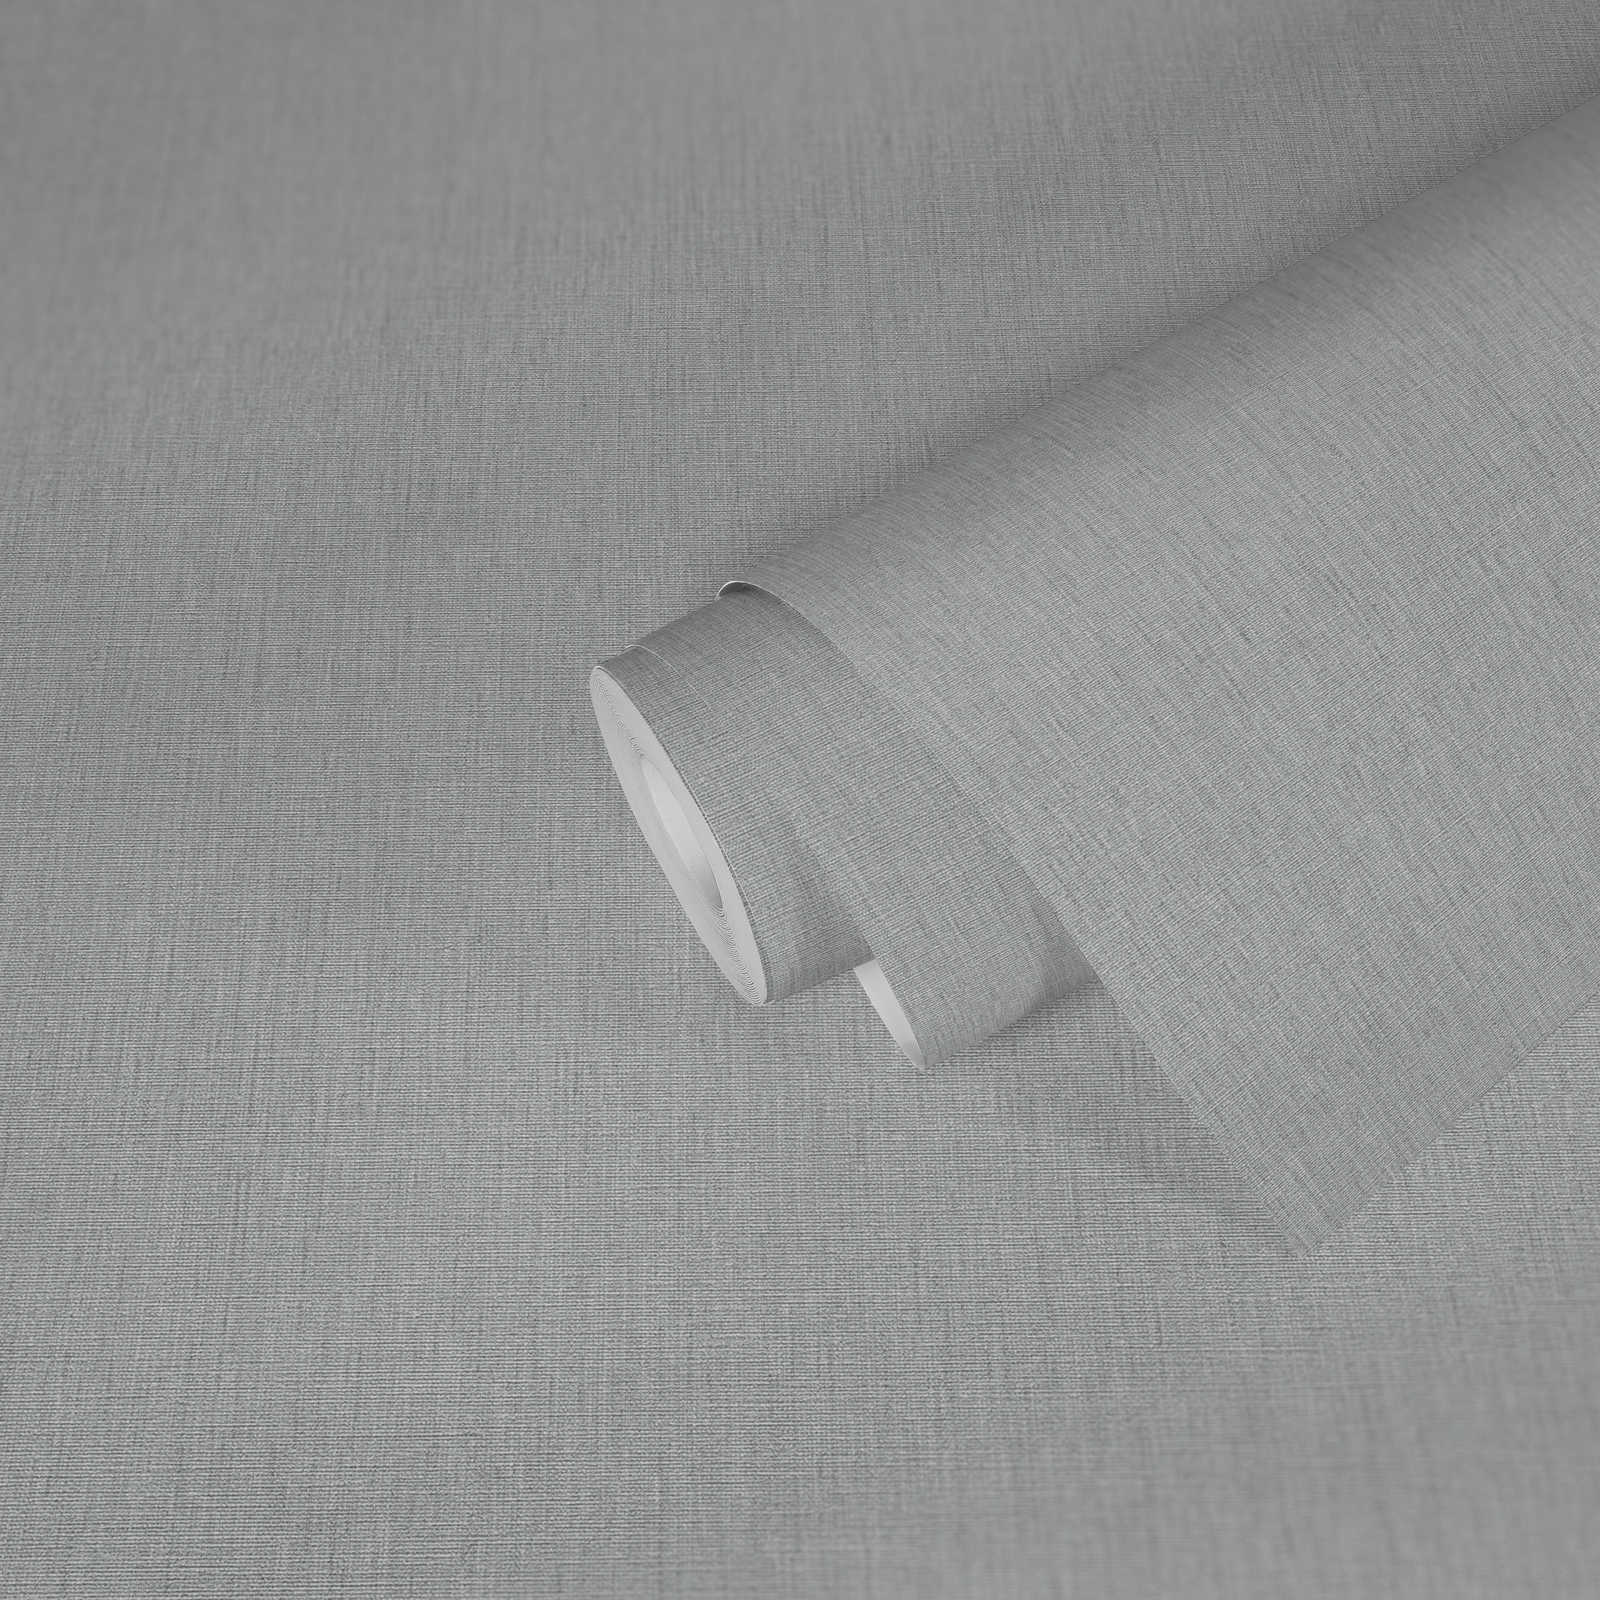             papier peint en papier uni légèrement structuré dans une teinte sobre - gris
        